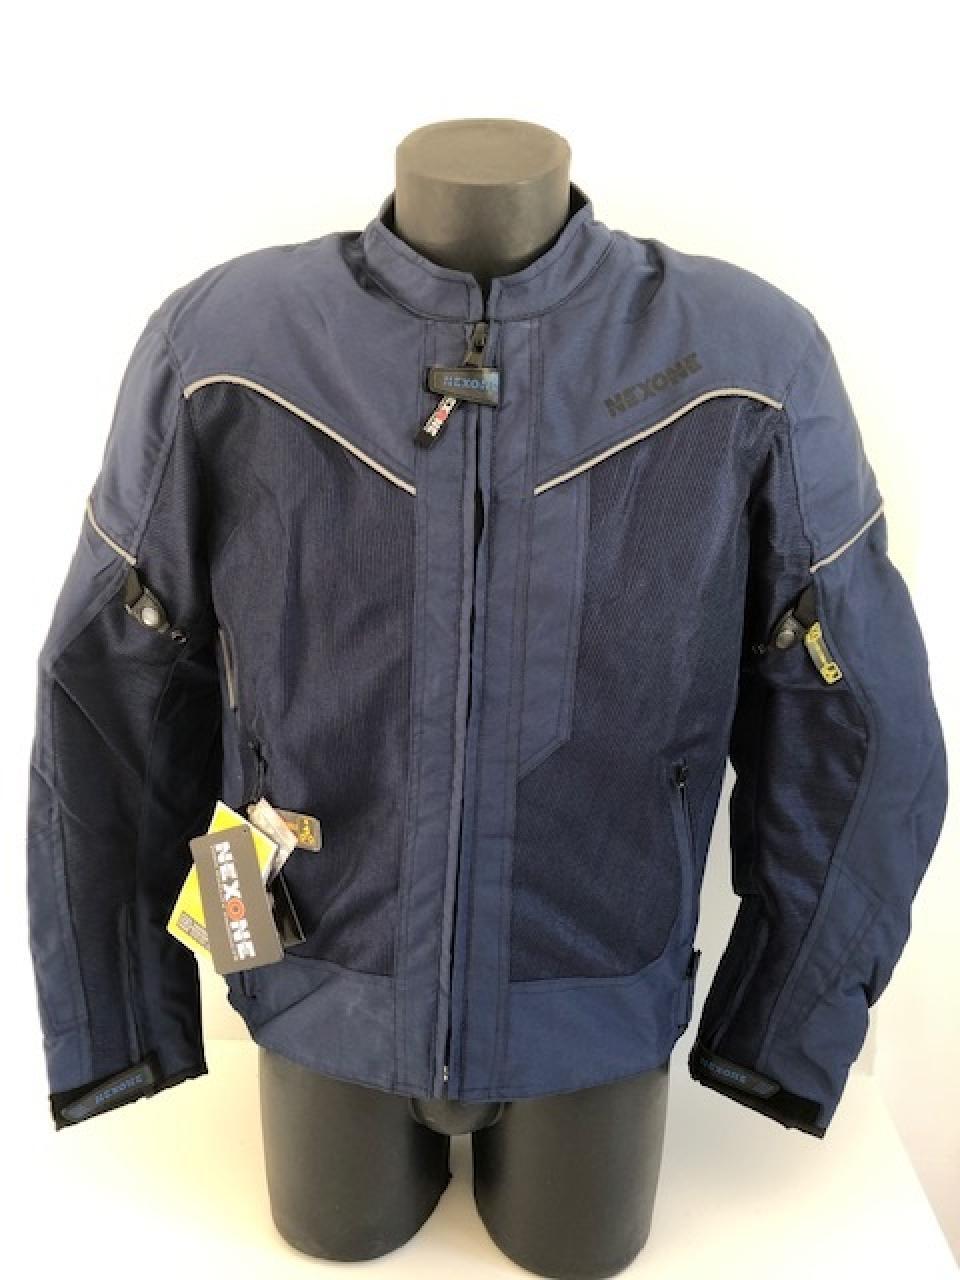 Blouson veste pour moto Homme Nexone Eté Flavio bleu Textile  Taille L homologué CE